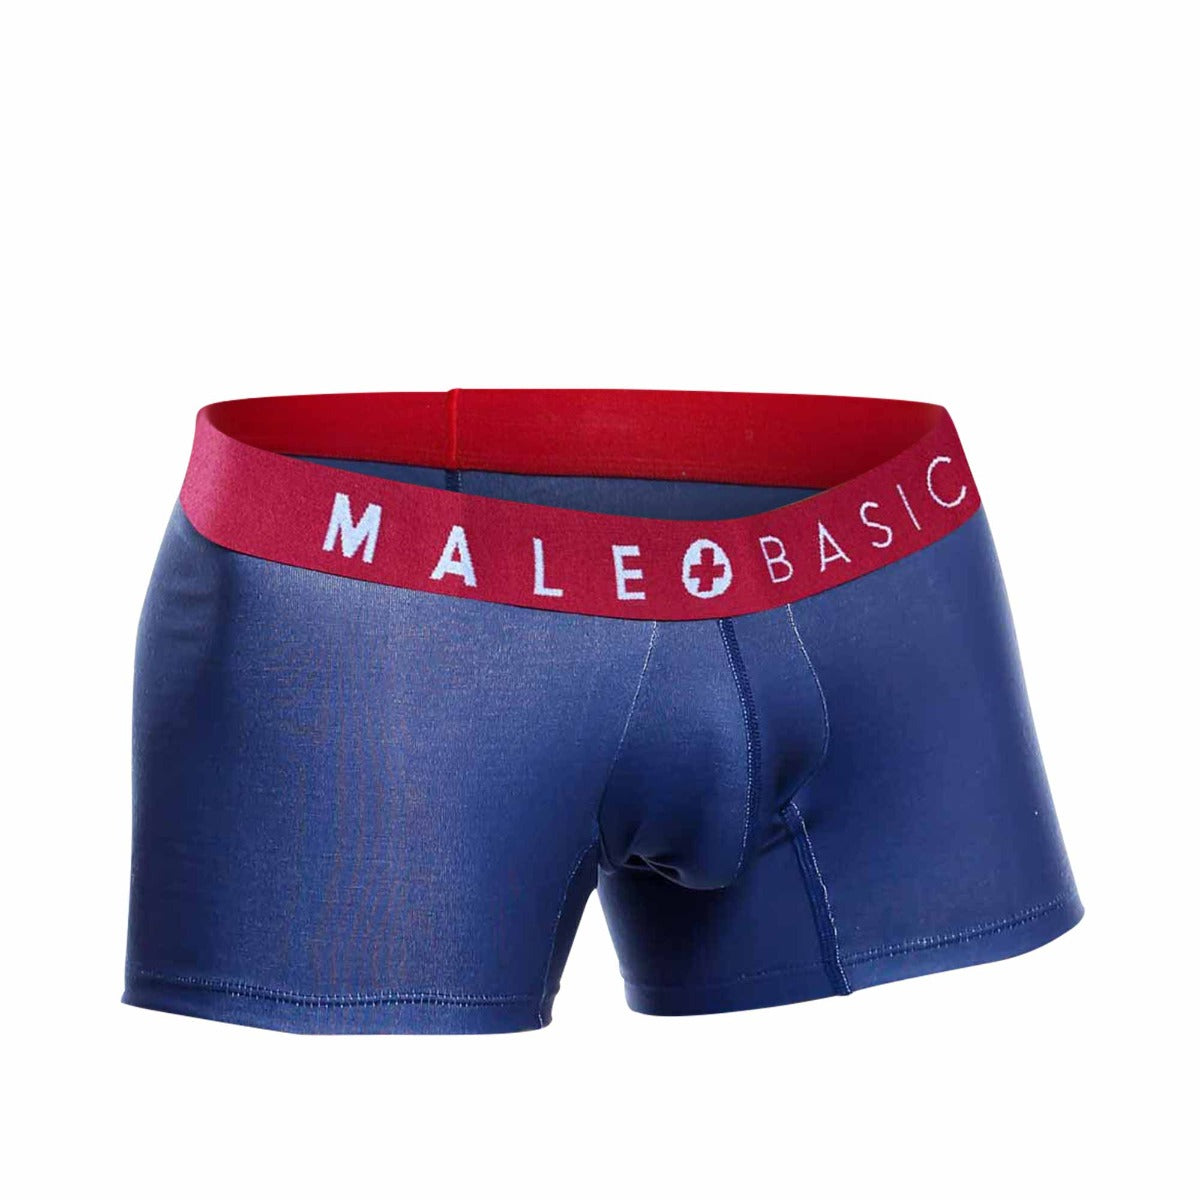 MaleBasics Nuevo Boxer Corto Marine- Paquete x 3